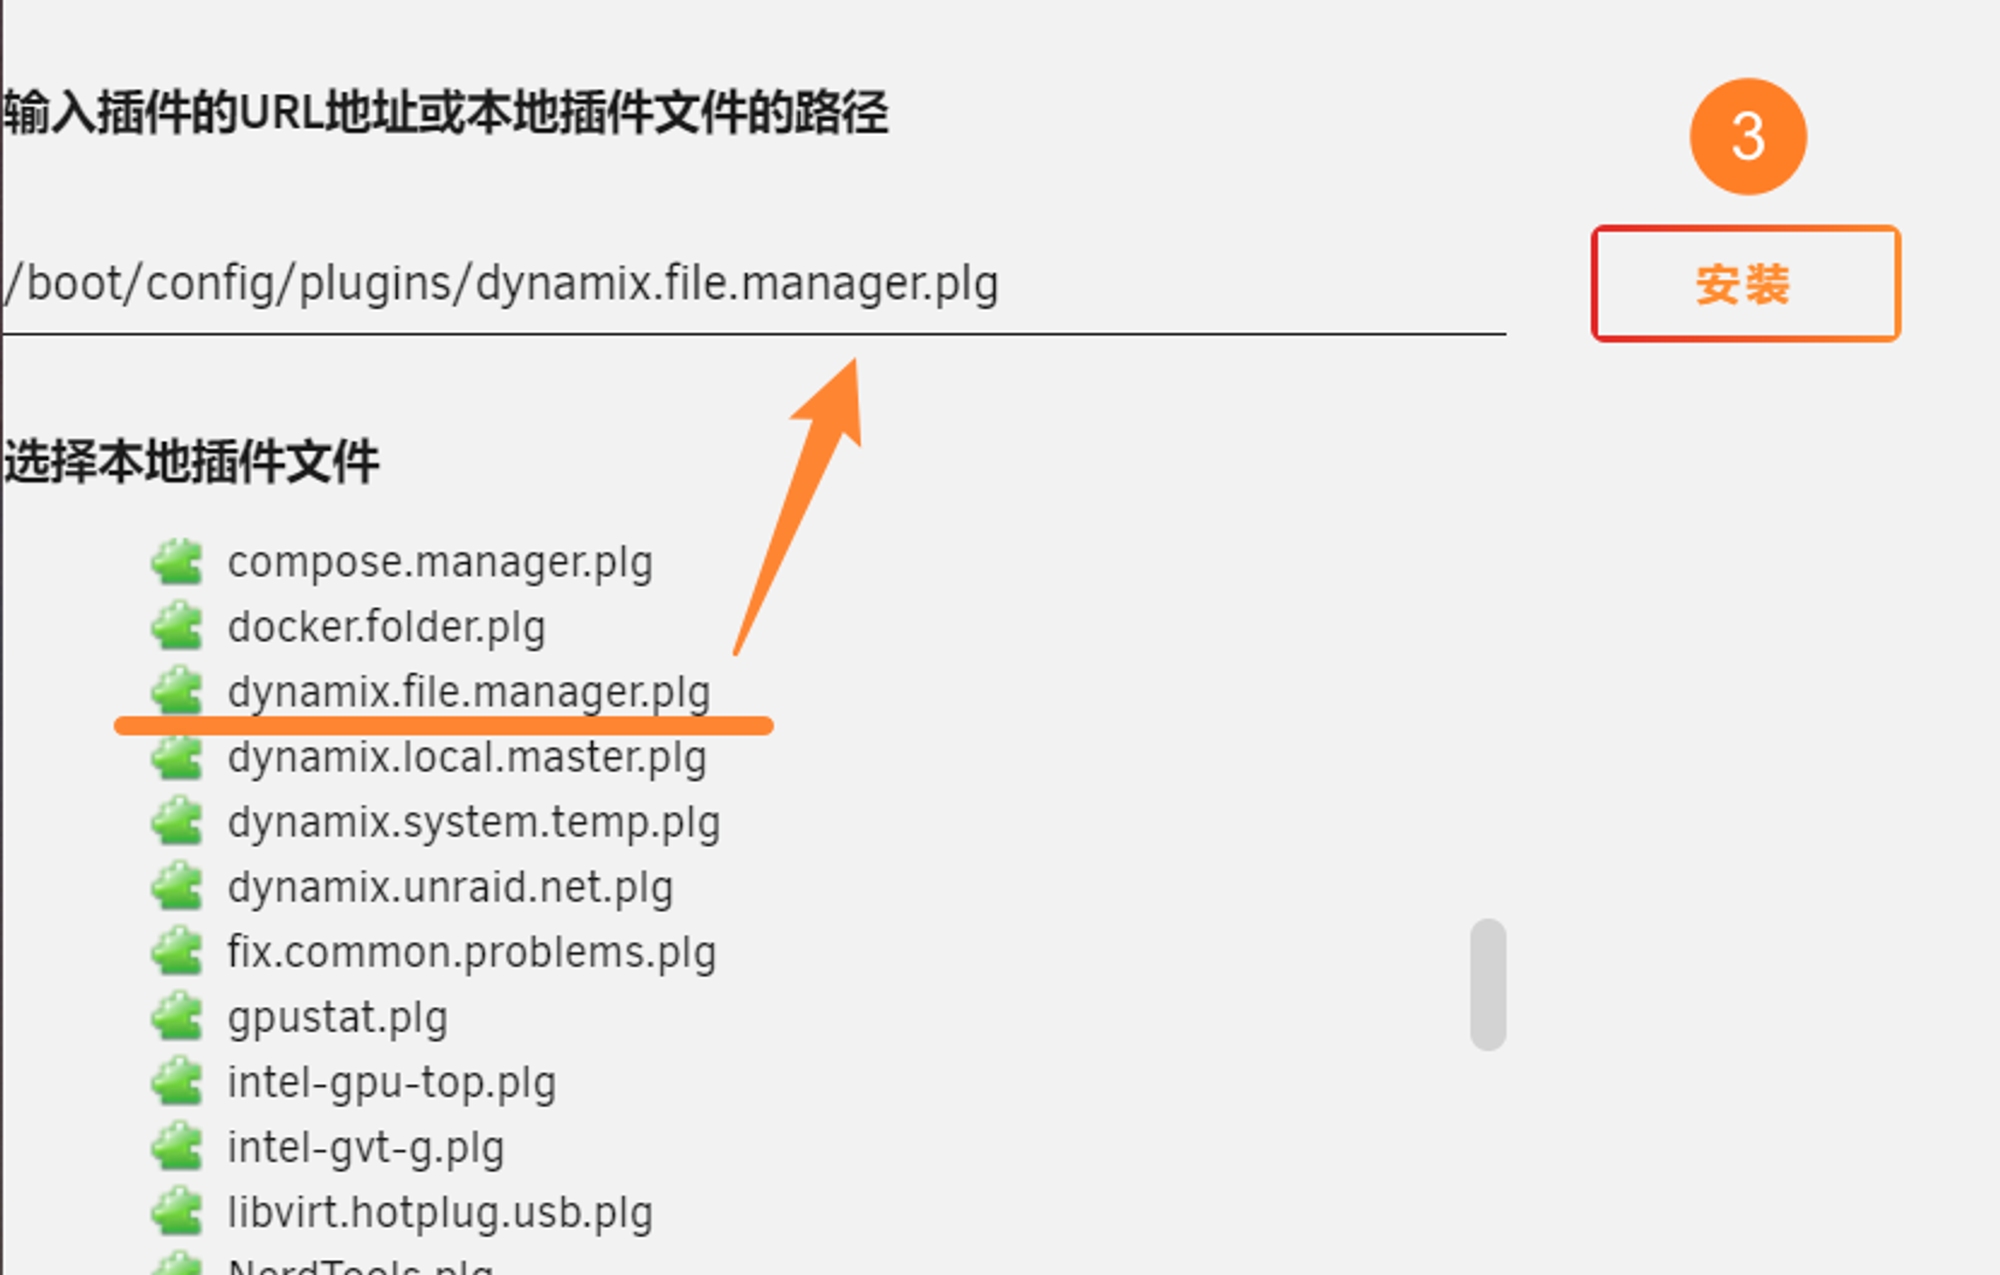 找到 dynamix.file.manager.plg 后点击安装